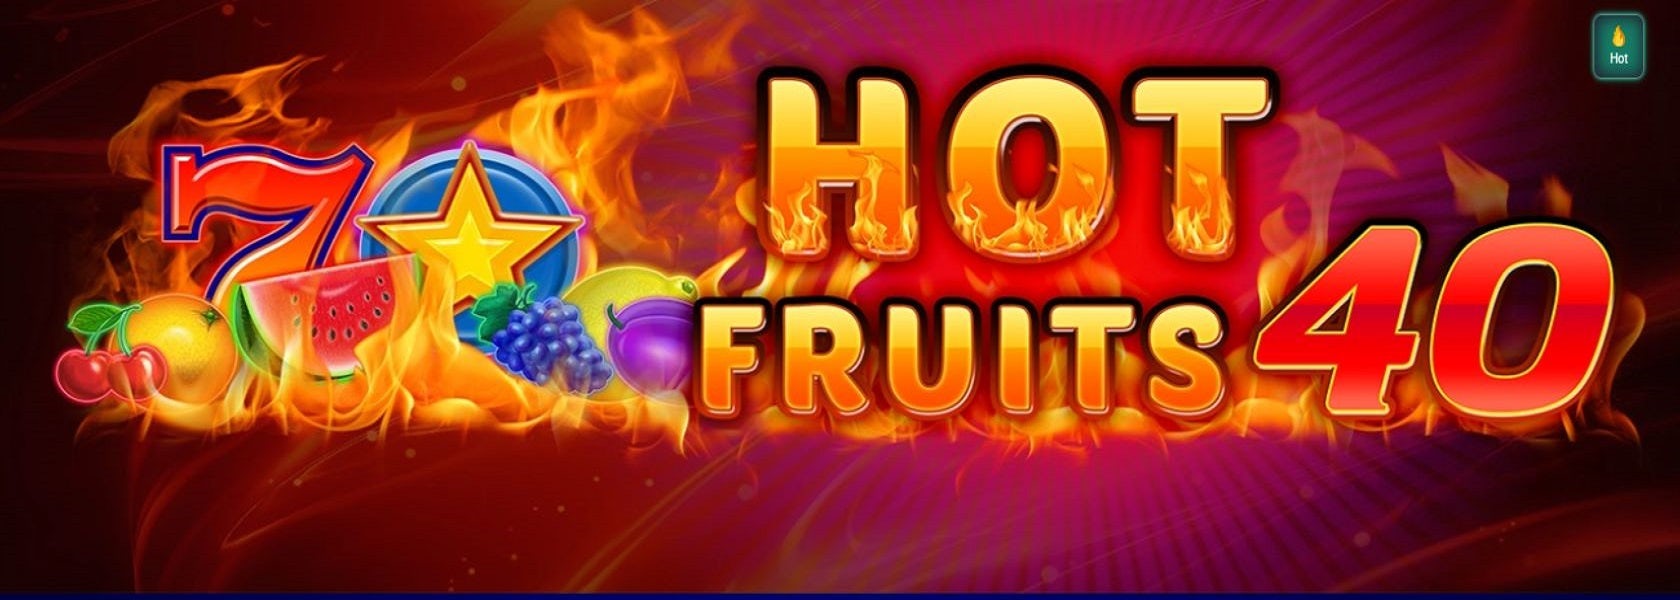 hot-fruits-40-header-1680x600 (1)